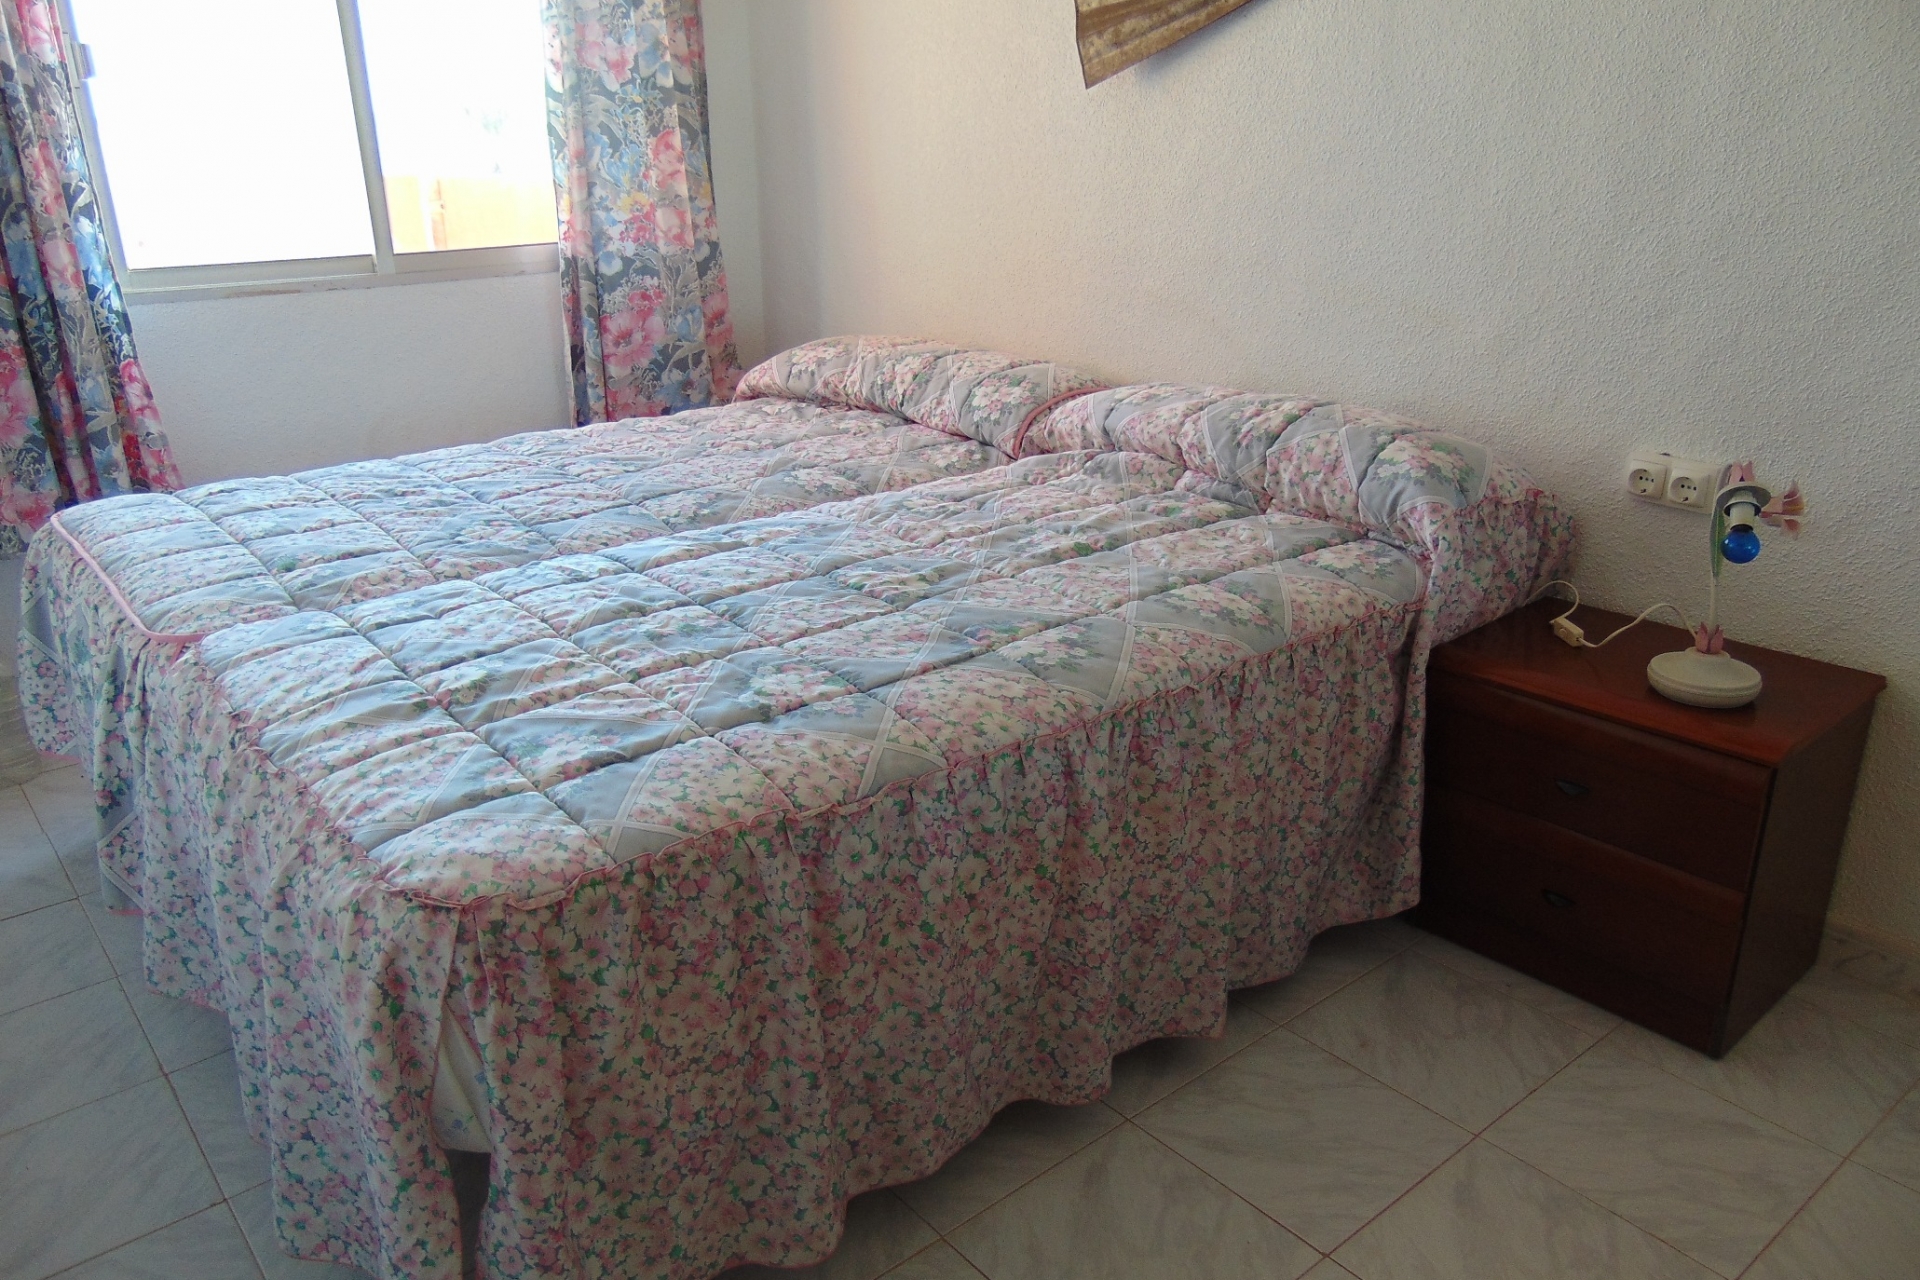 Property for sale - Bungalow for sale - Cartagena - Los Urrutias